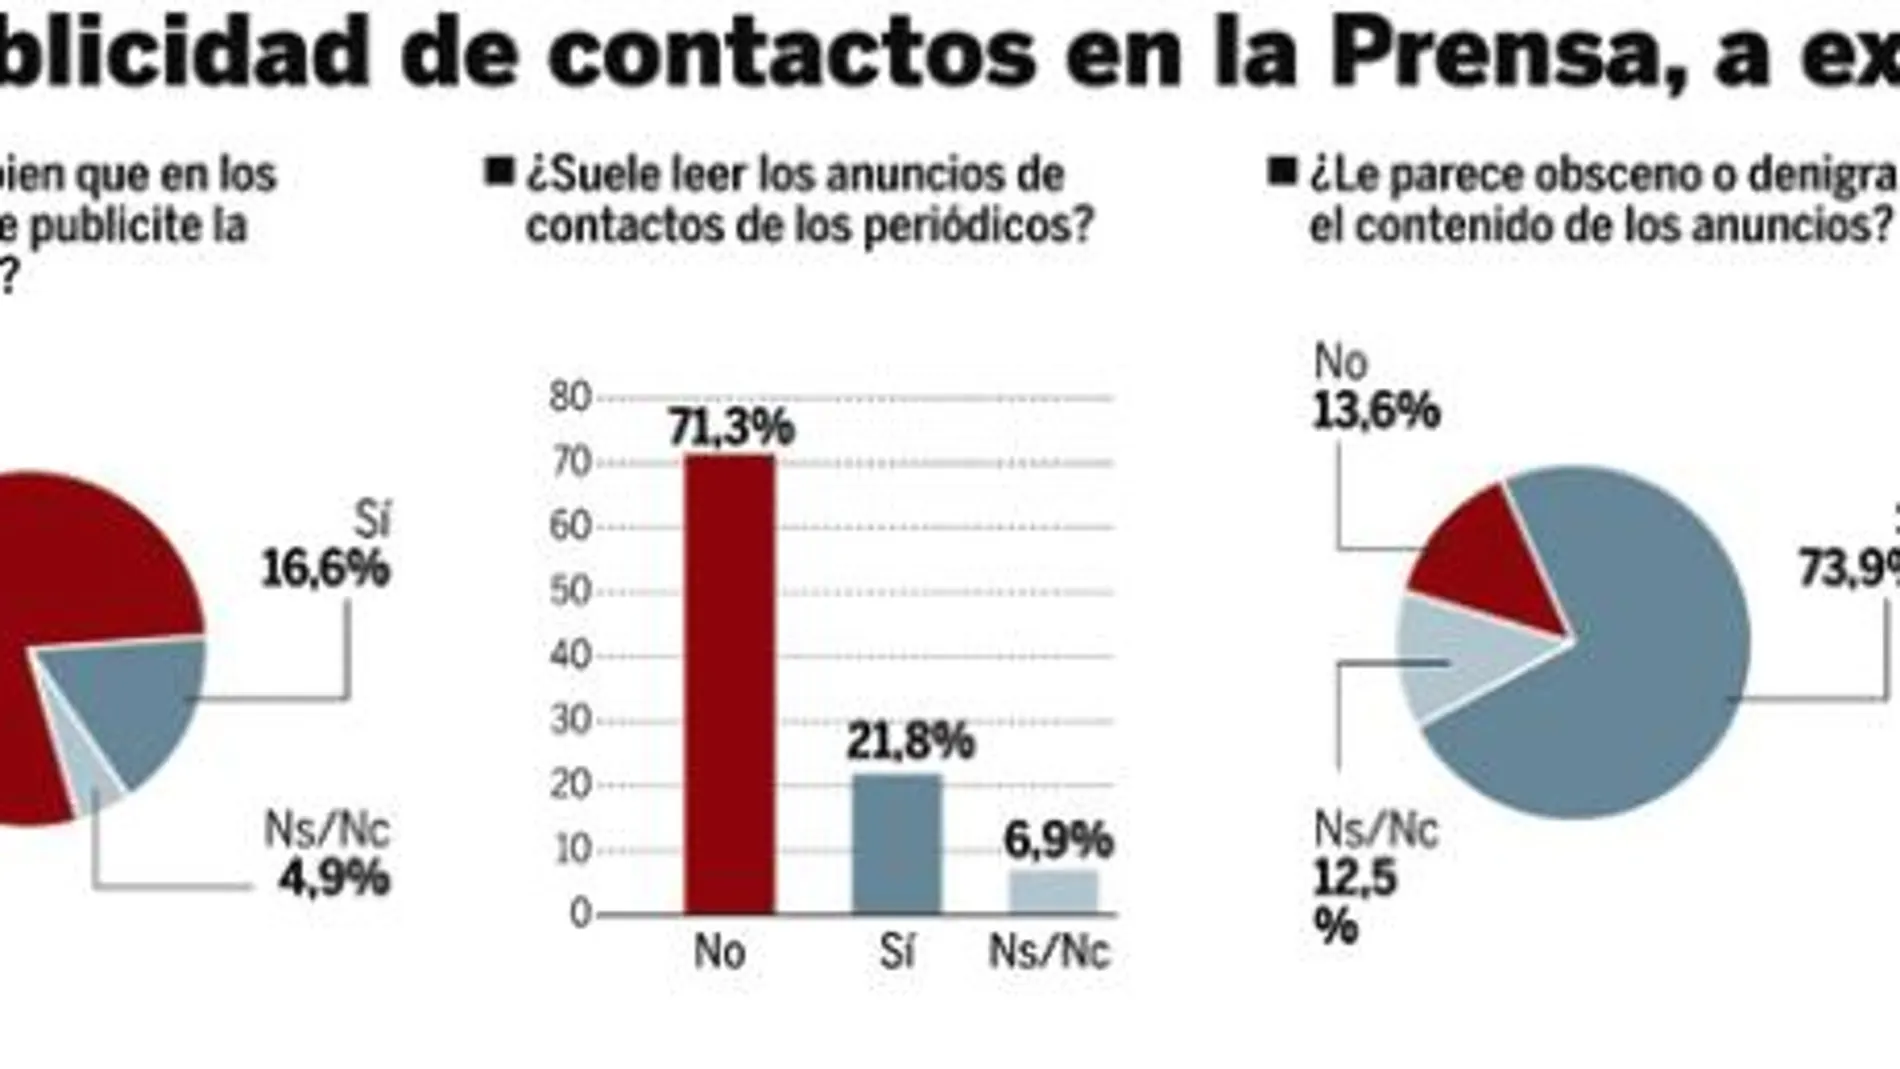 Ocho de cada diez españoles contra los anuncios de sexo en la Prensa